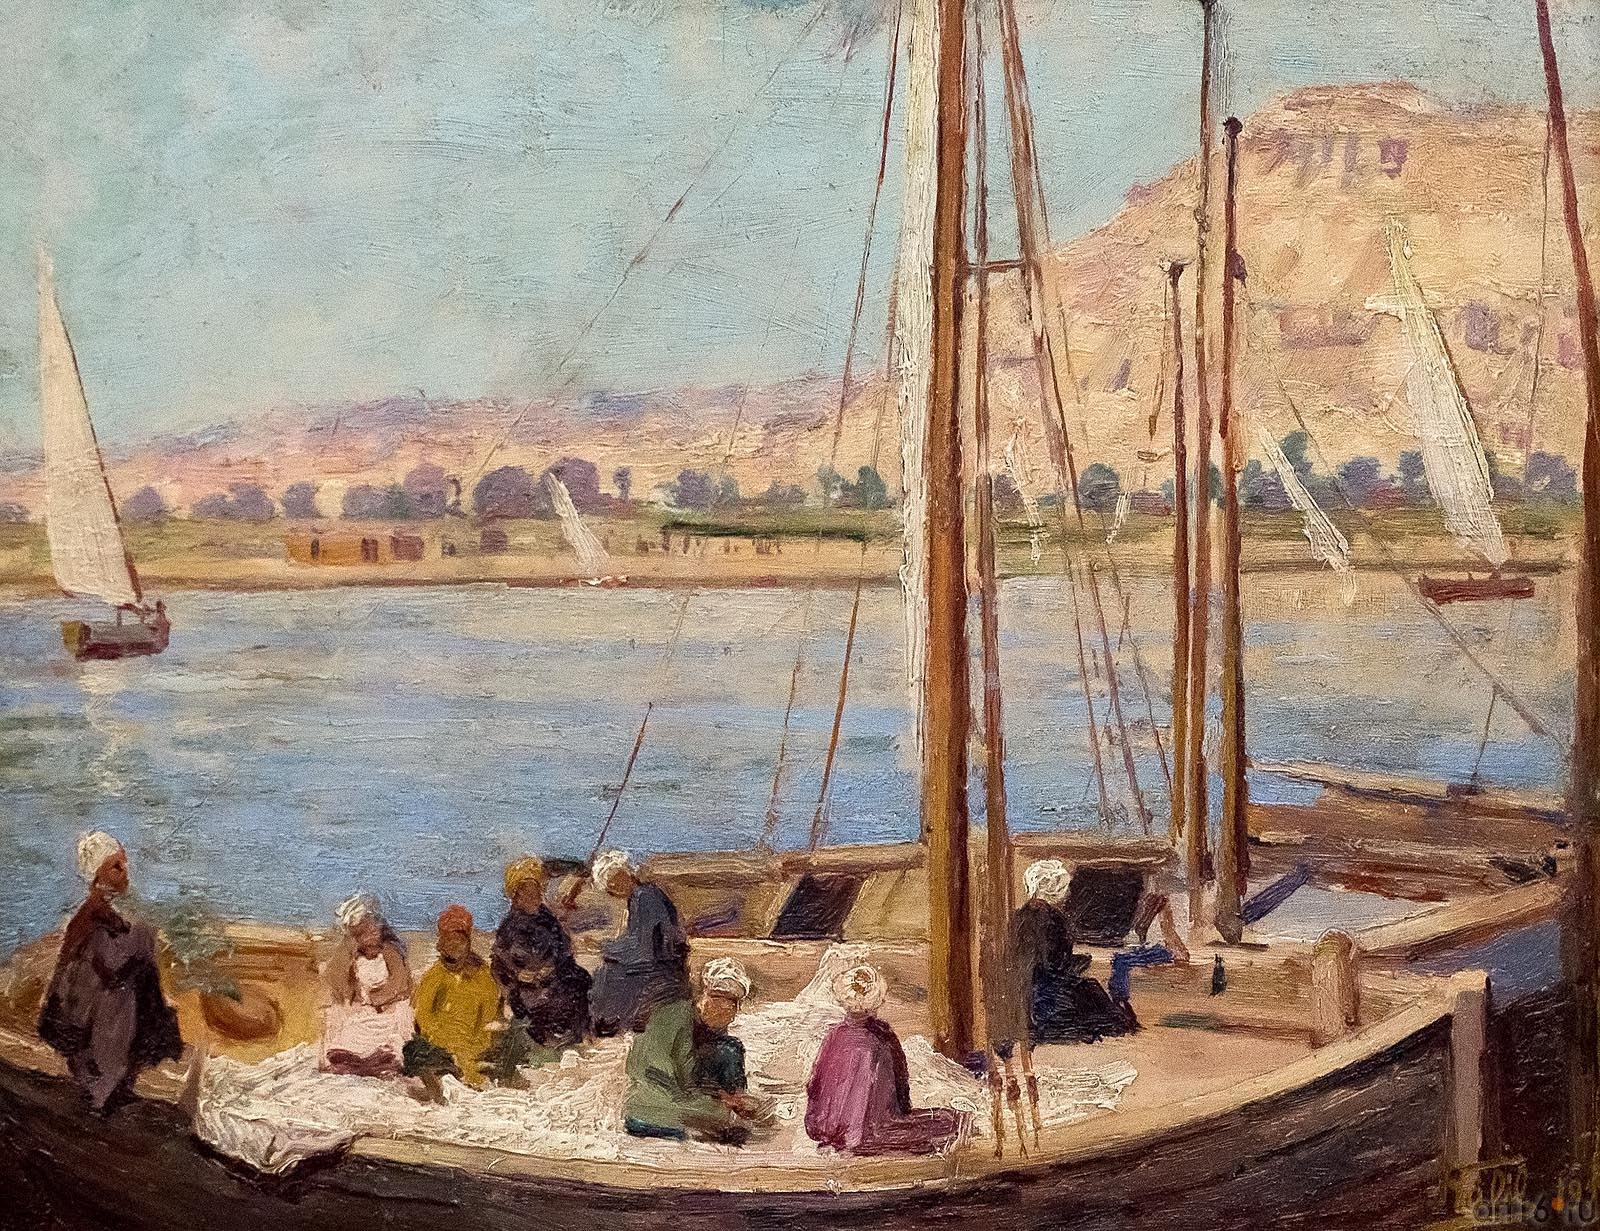 ХАЛИЛЬ ПАША. ПАРУСНИКИ В ЕГИПТЕ::Эстетический подход и творческое мышление в современной турецкой живописи